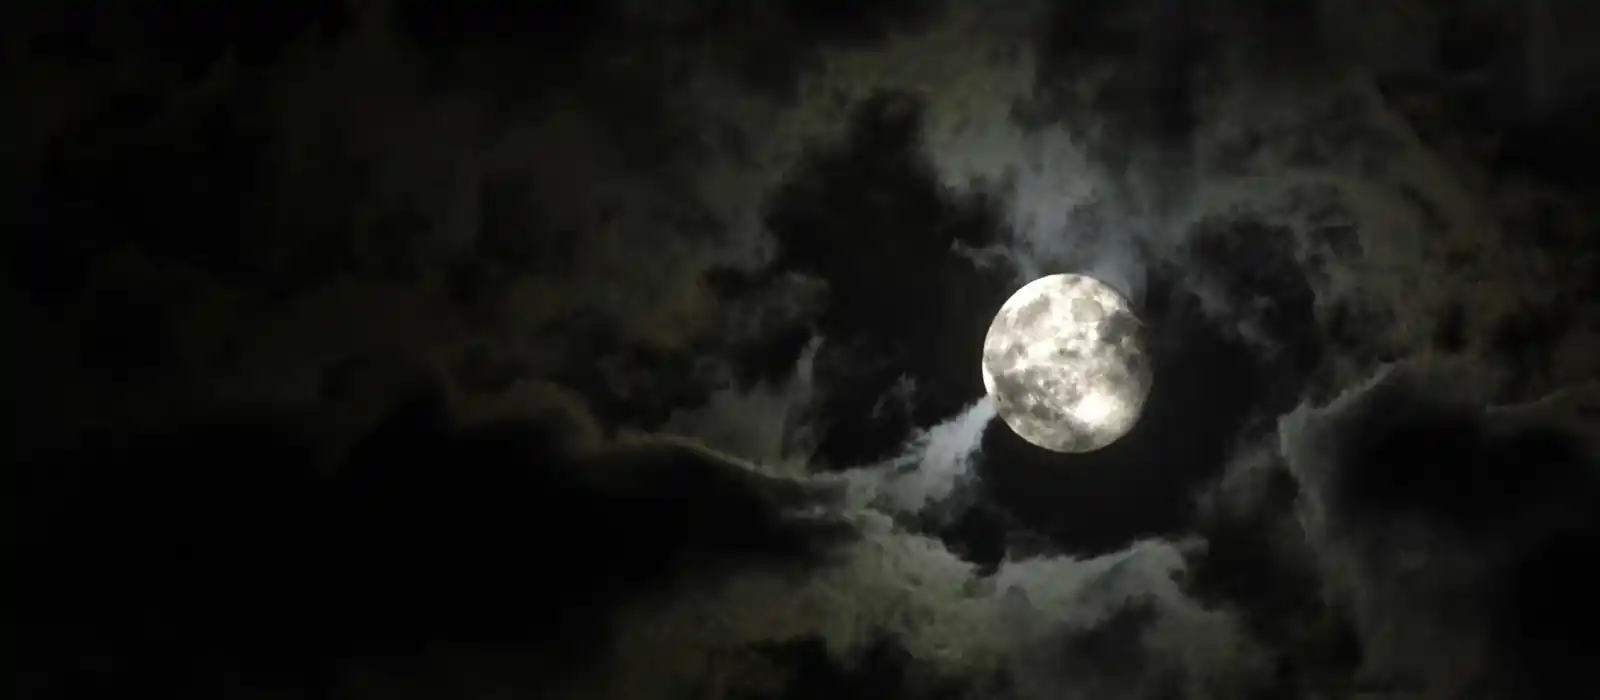 Spooky full moon